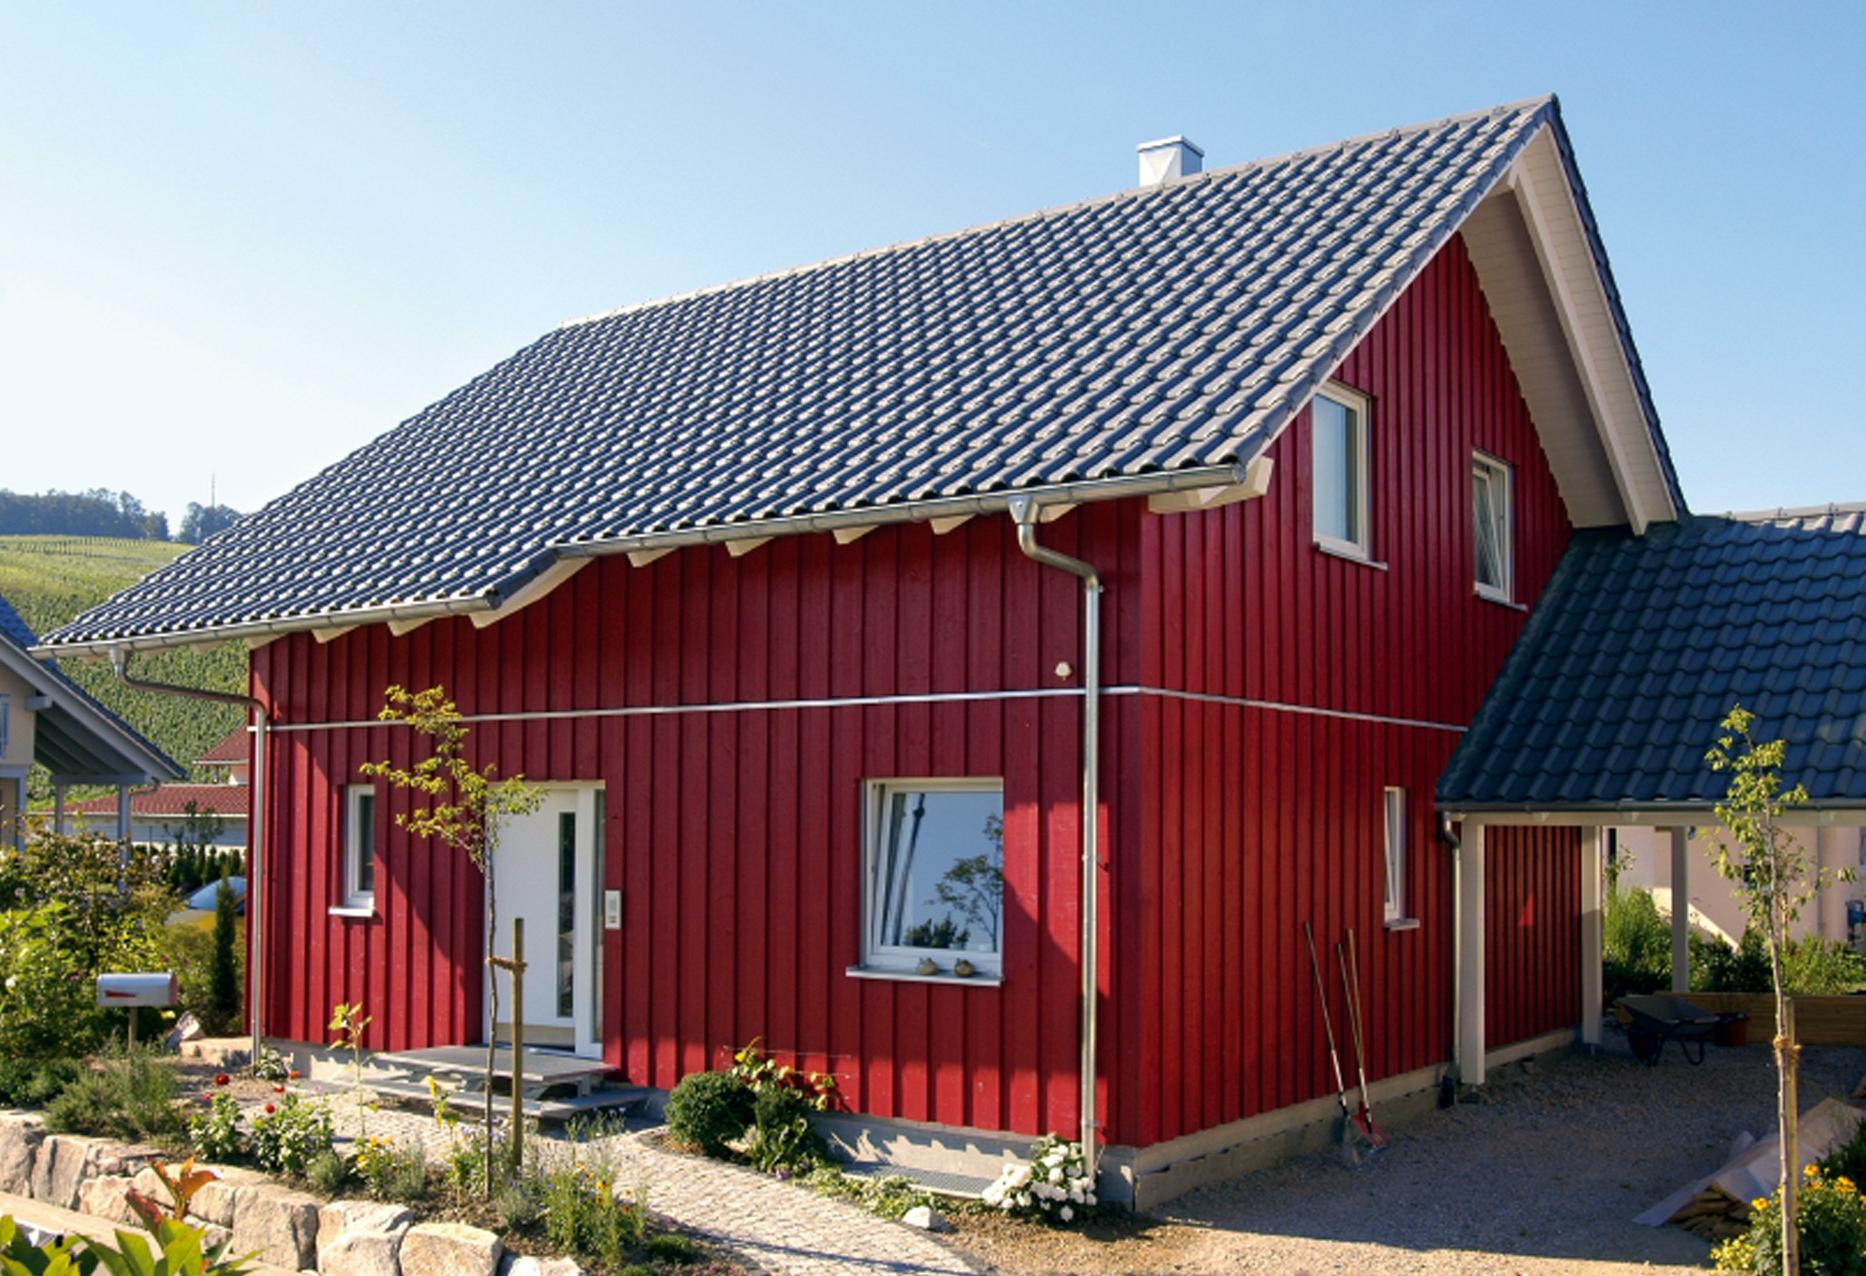 Maison préfabriquée scandinave avec façade en bois rouge